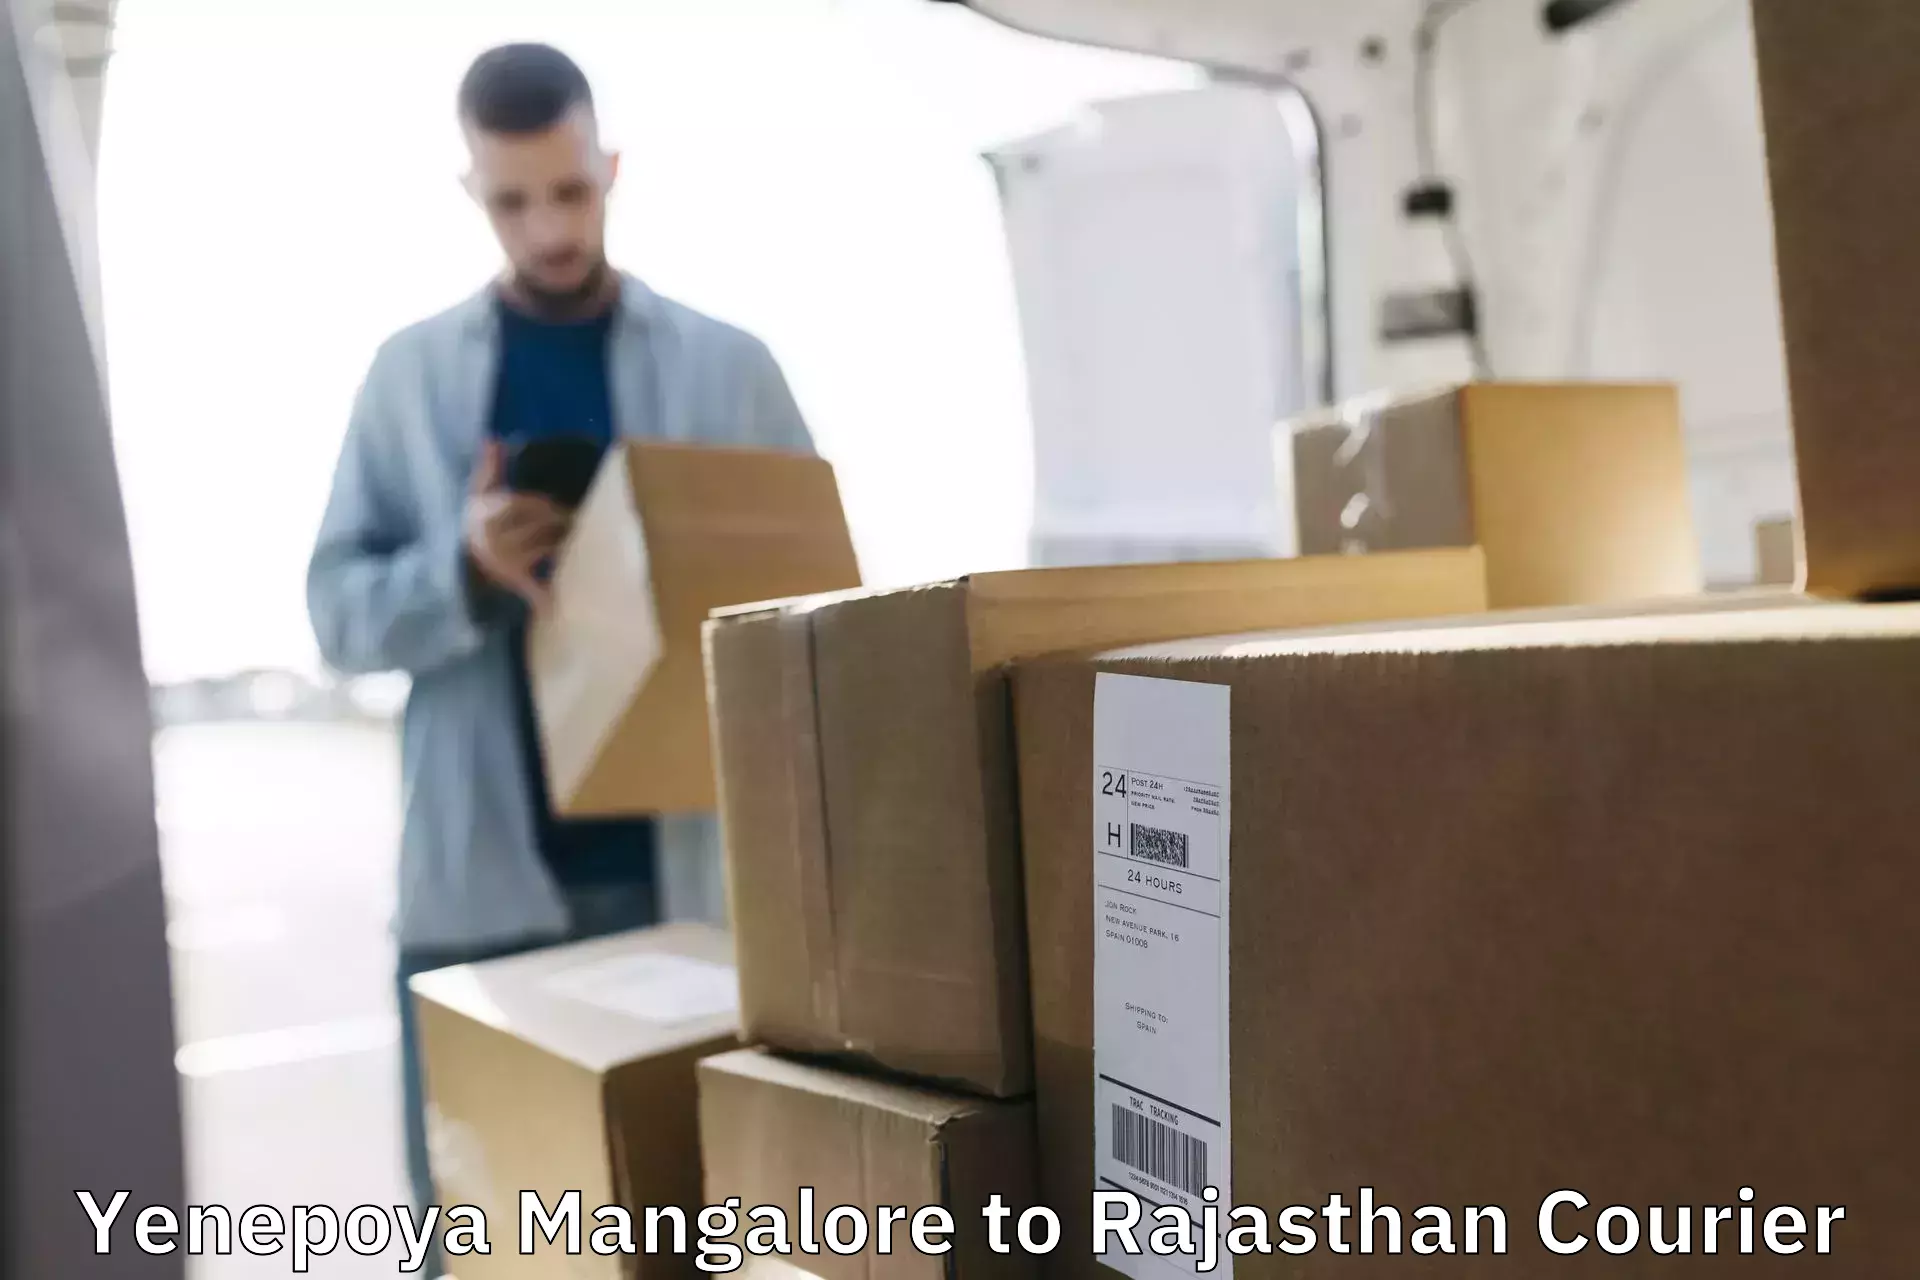 Nationwide parcel services Yenepoya Mangalore to Jaisalmer